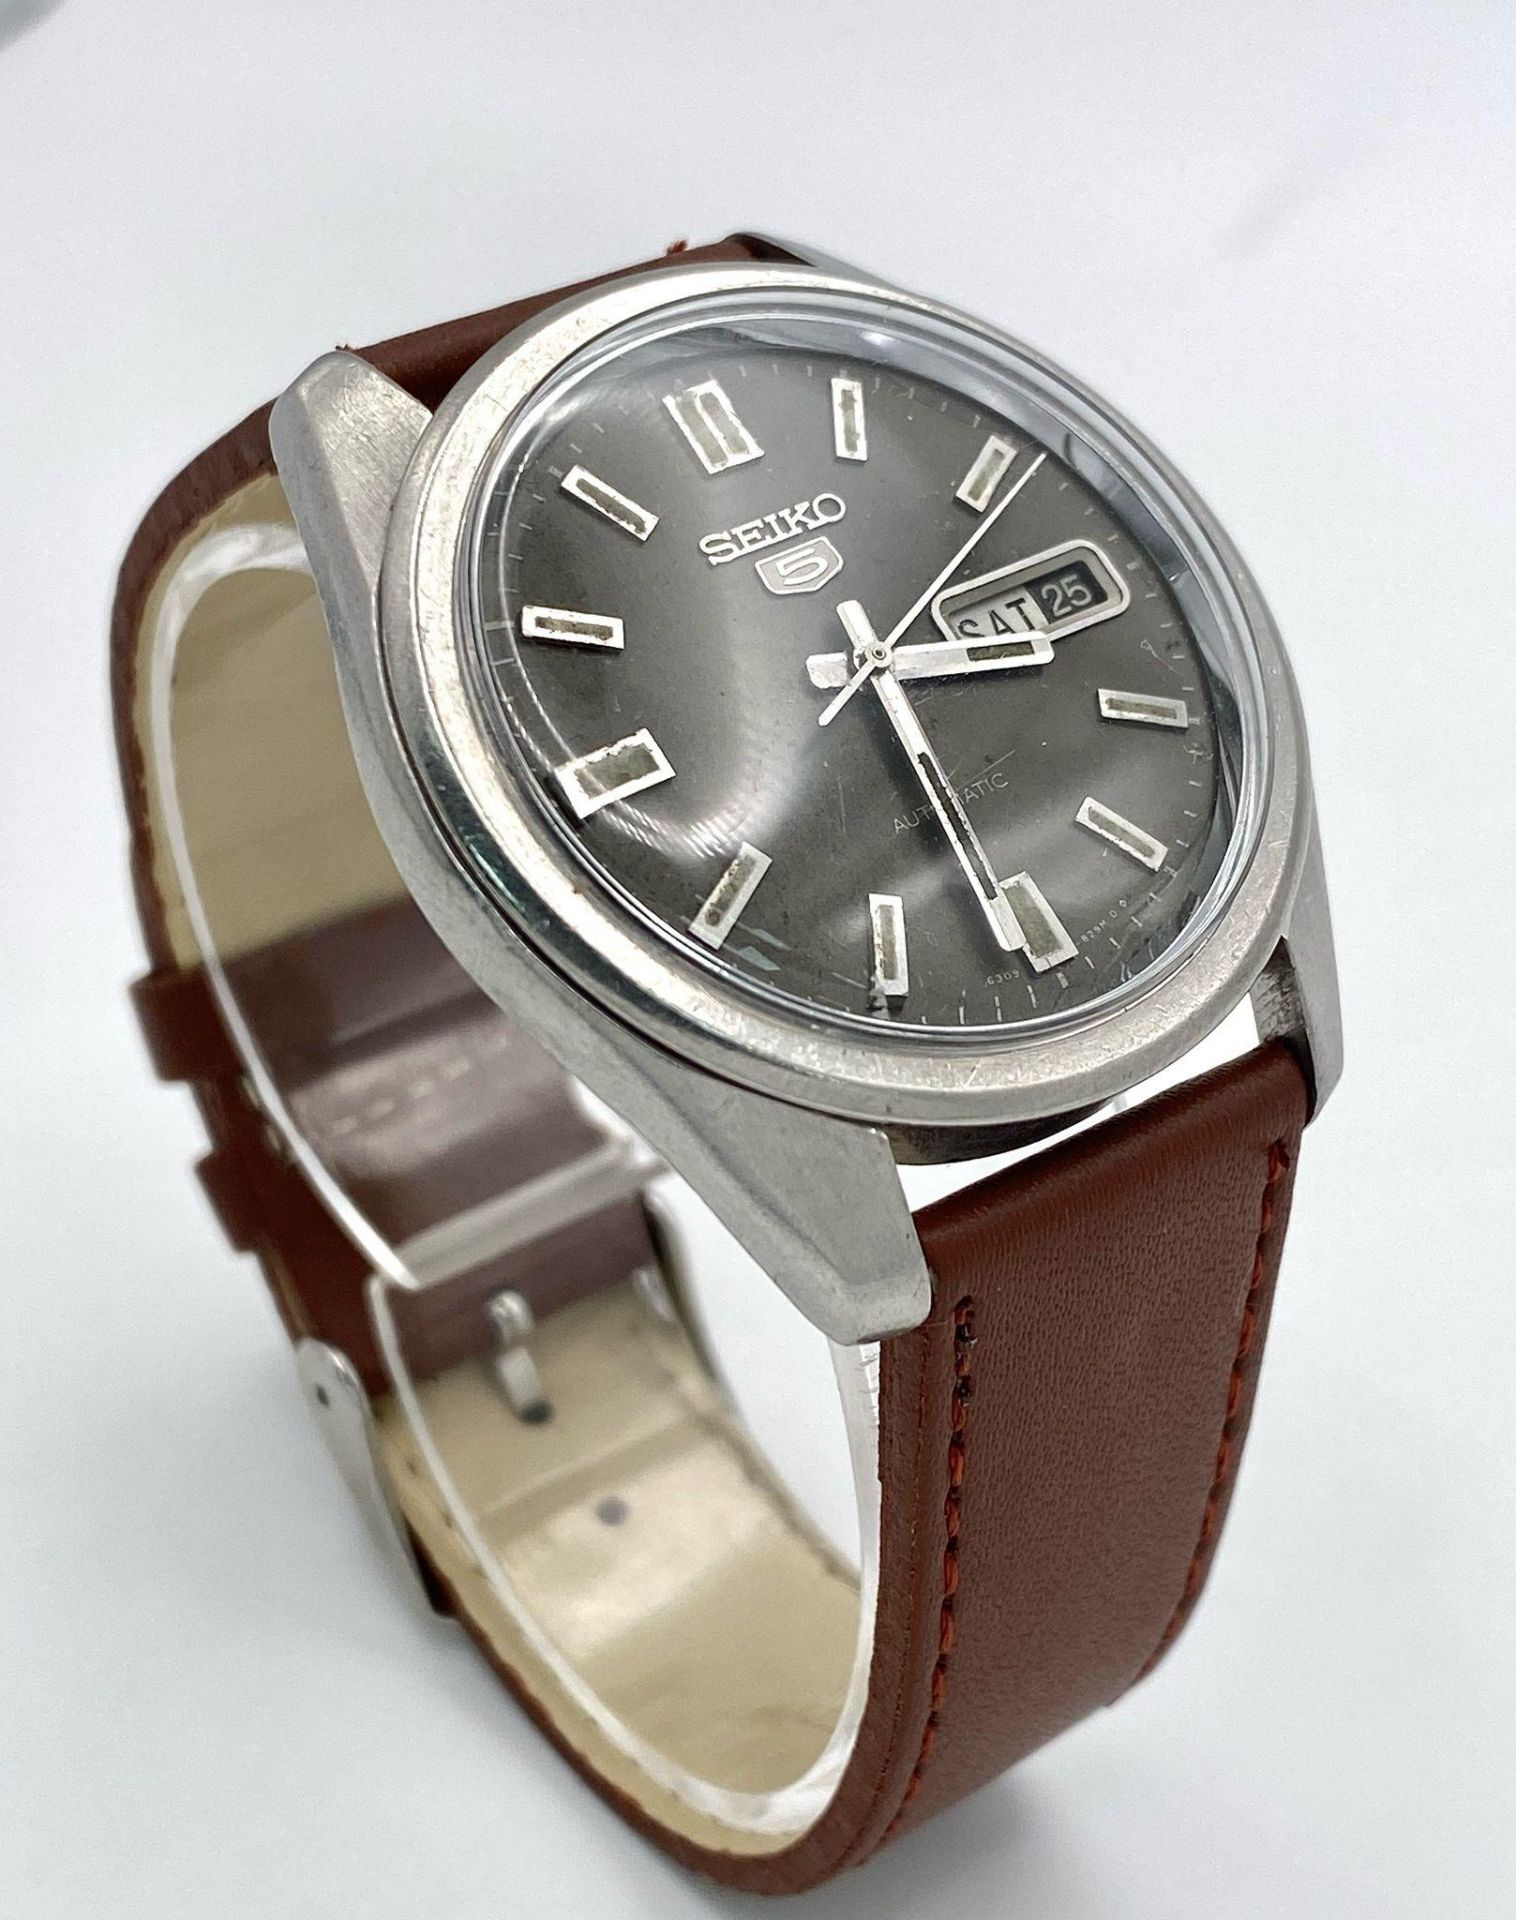 A Vintage Seiko 5 Automatic Gents Watch. Brown leather strap. Stainless steel case - 37mm. Dark grey - Bild 2 aus 7